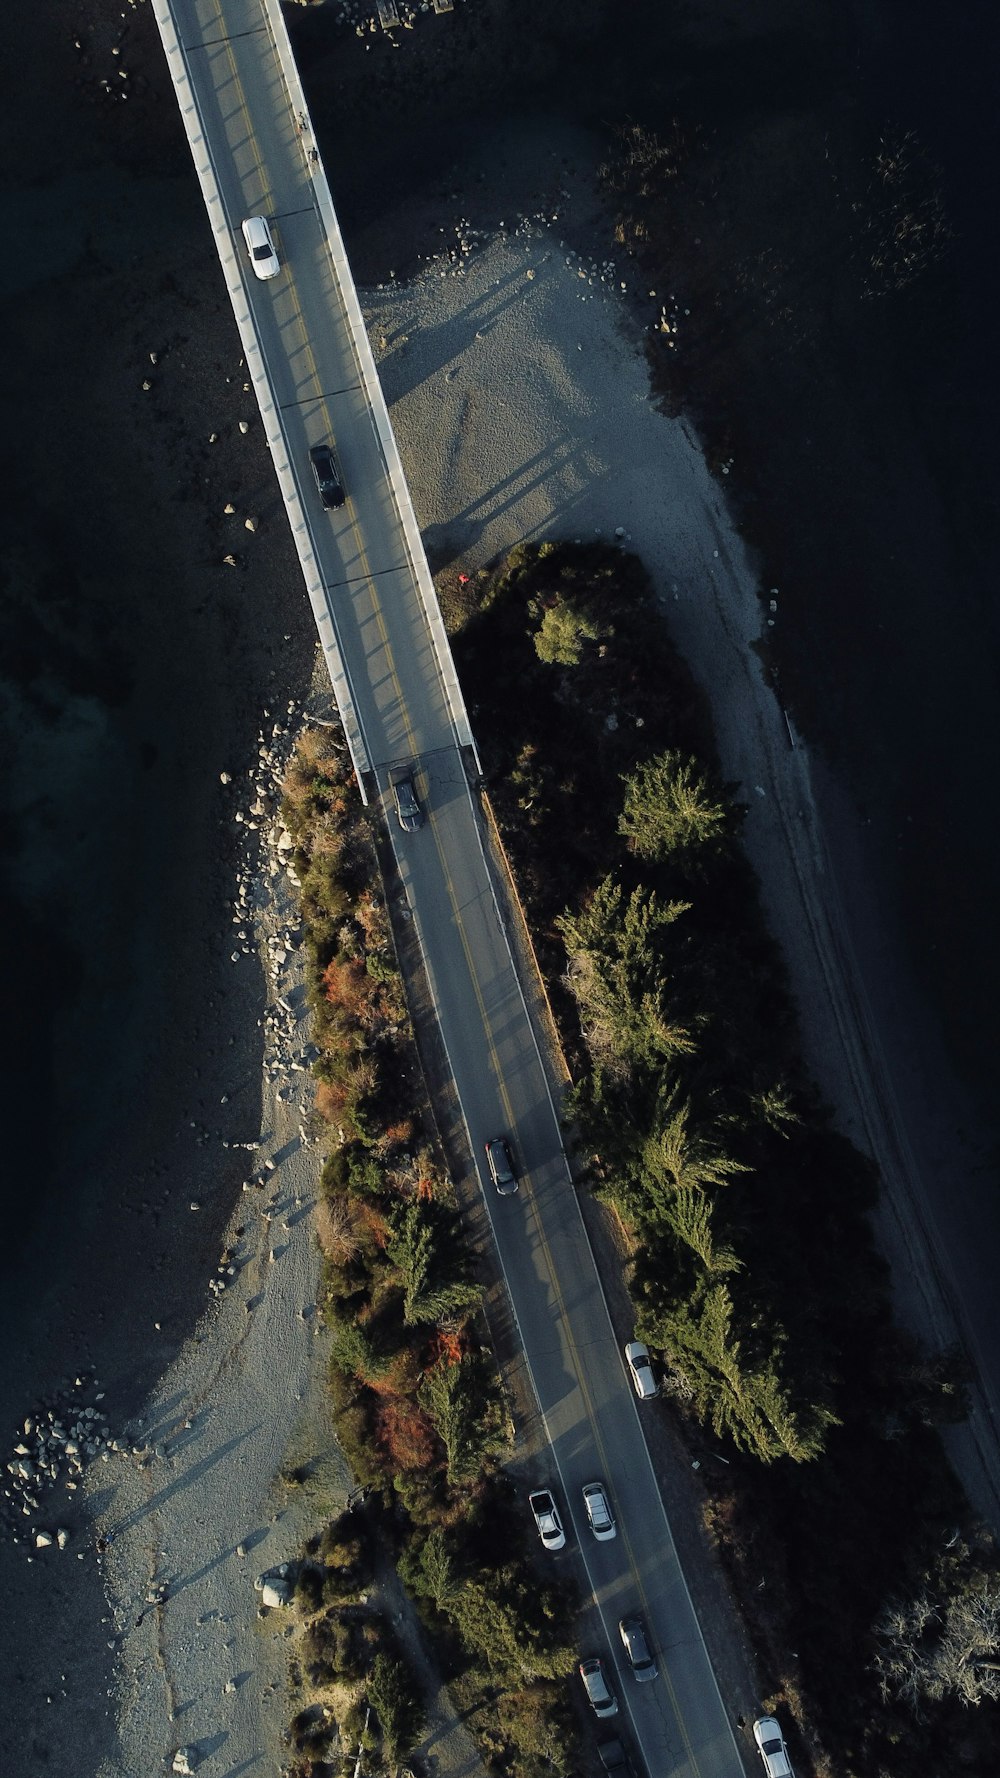 uma vista aérea de uma rodovia com carros dirigindo nela